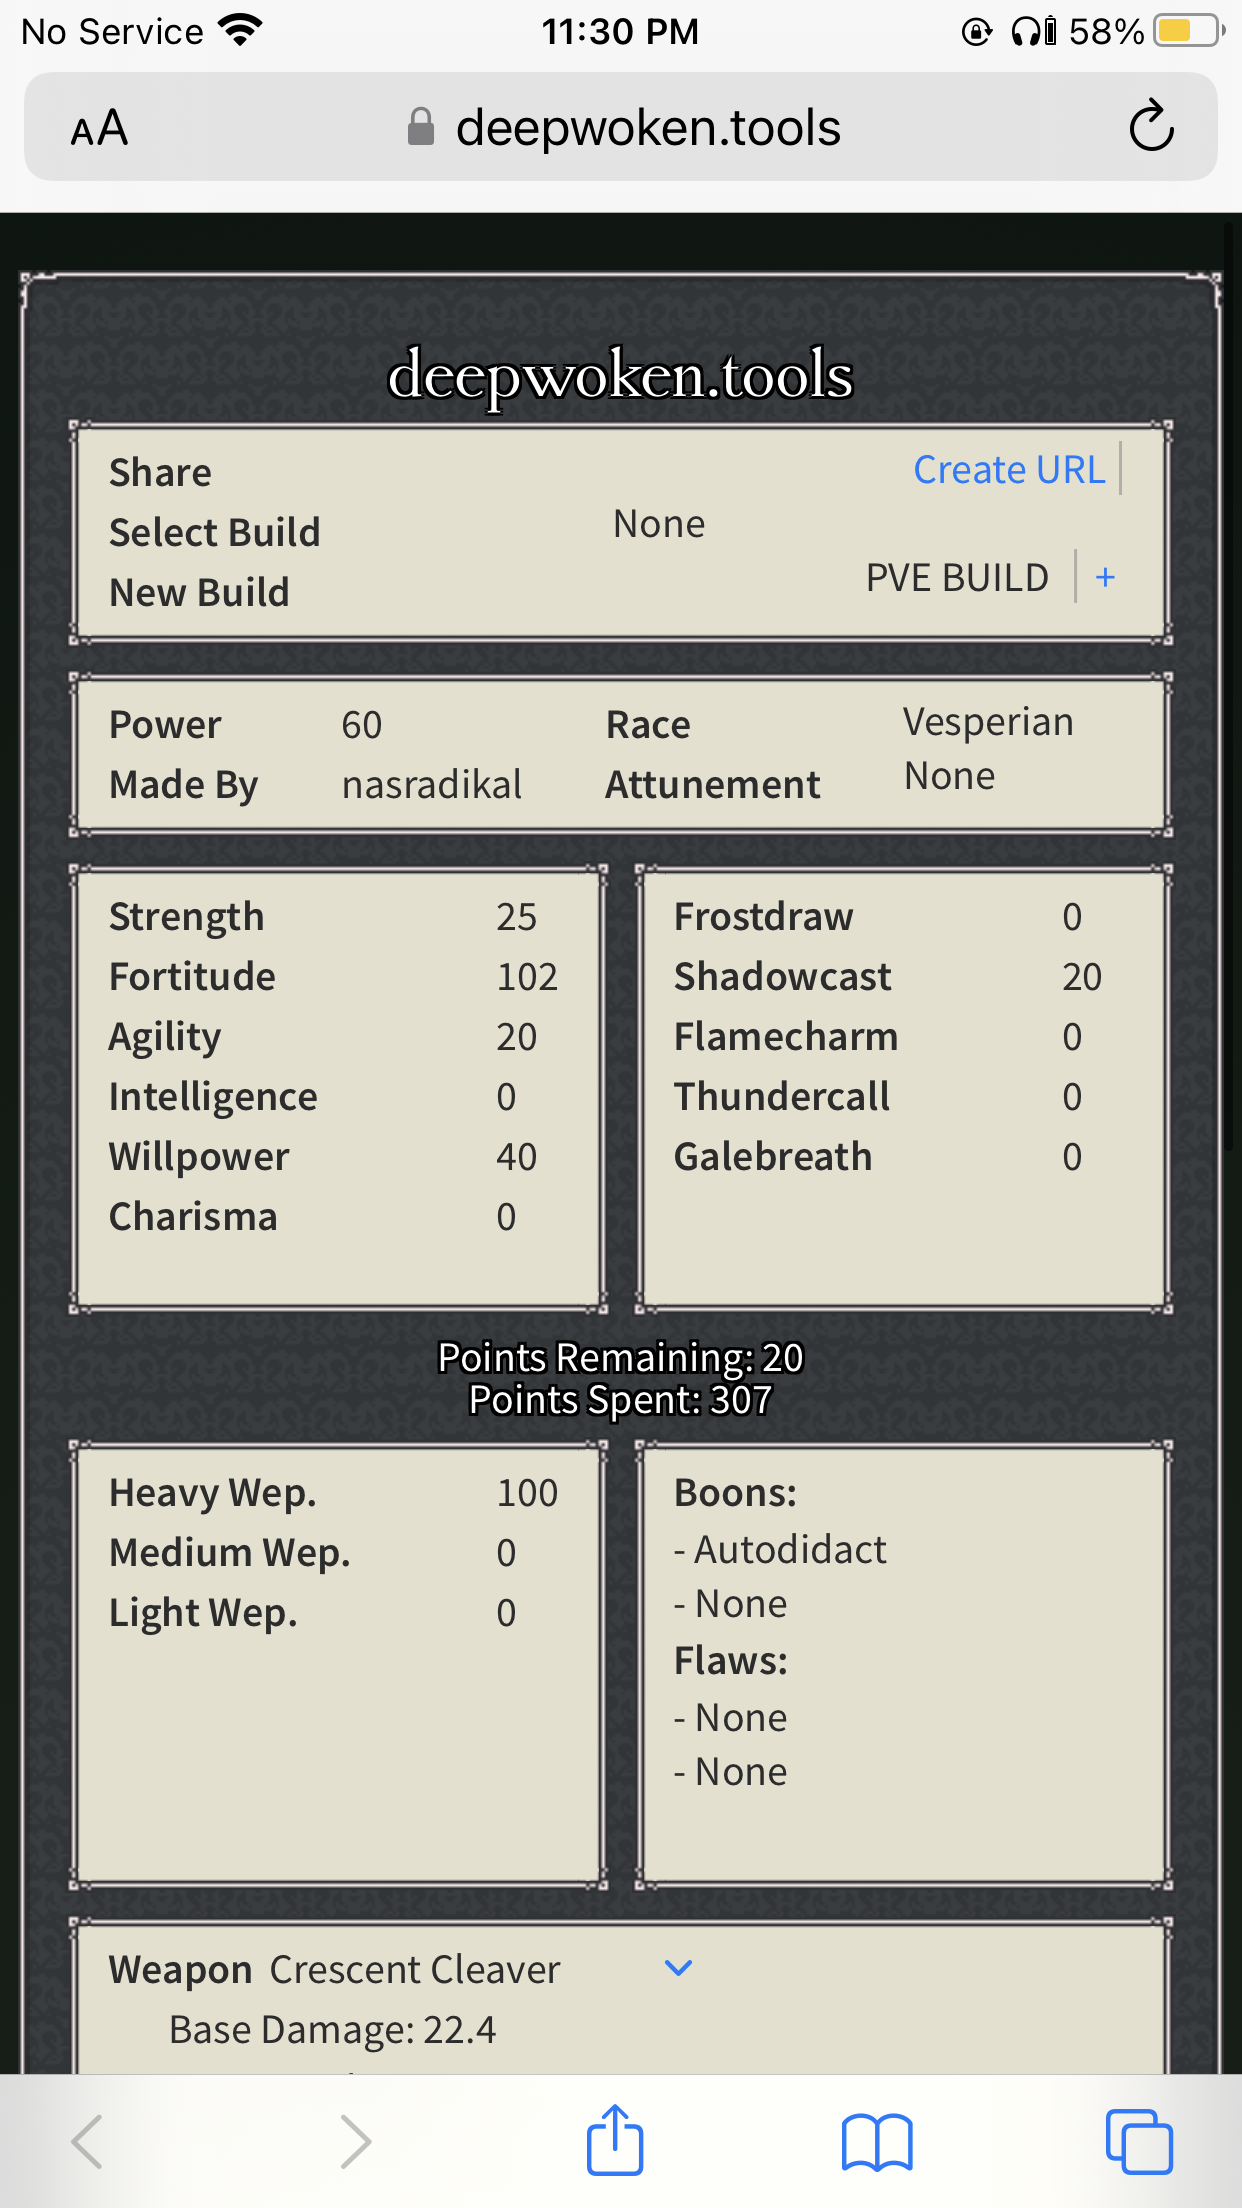 Pve build : r/deepwoken